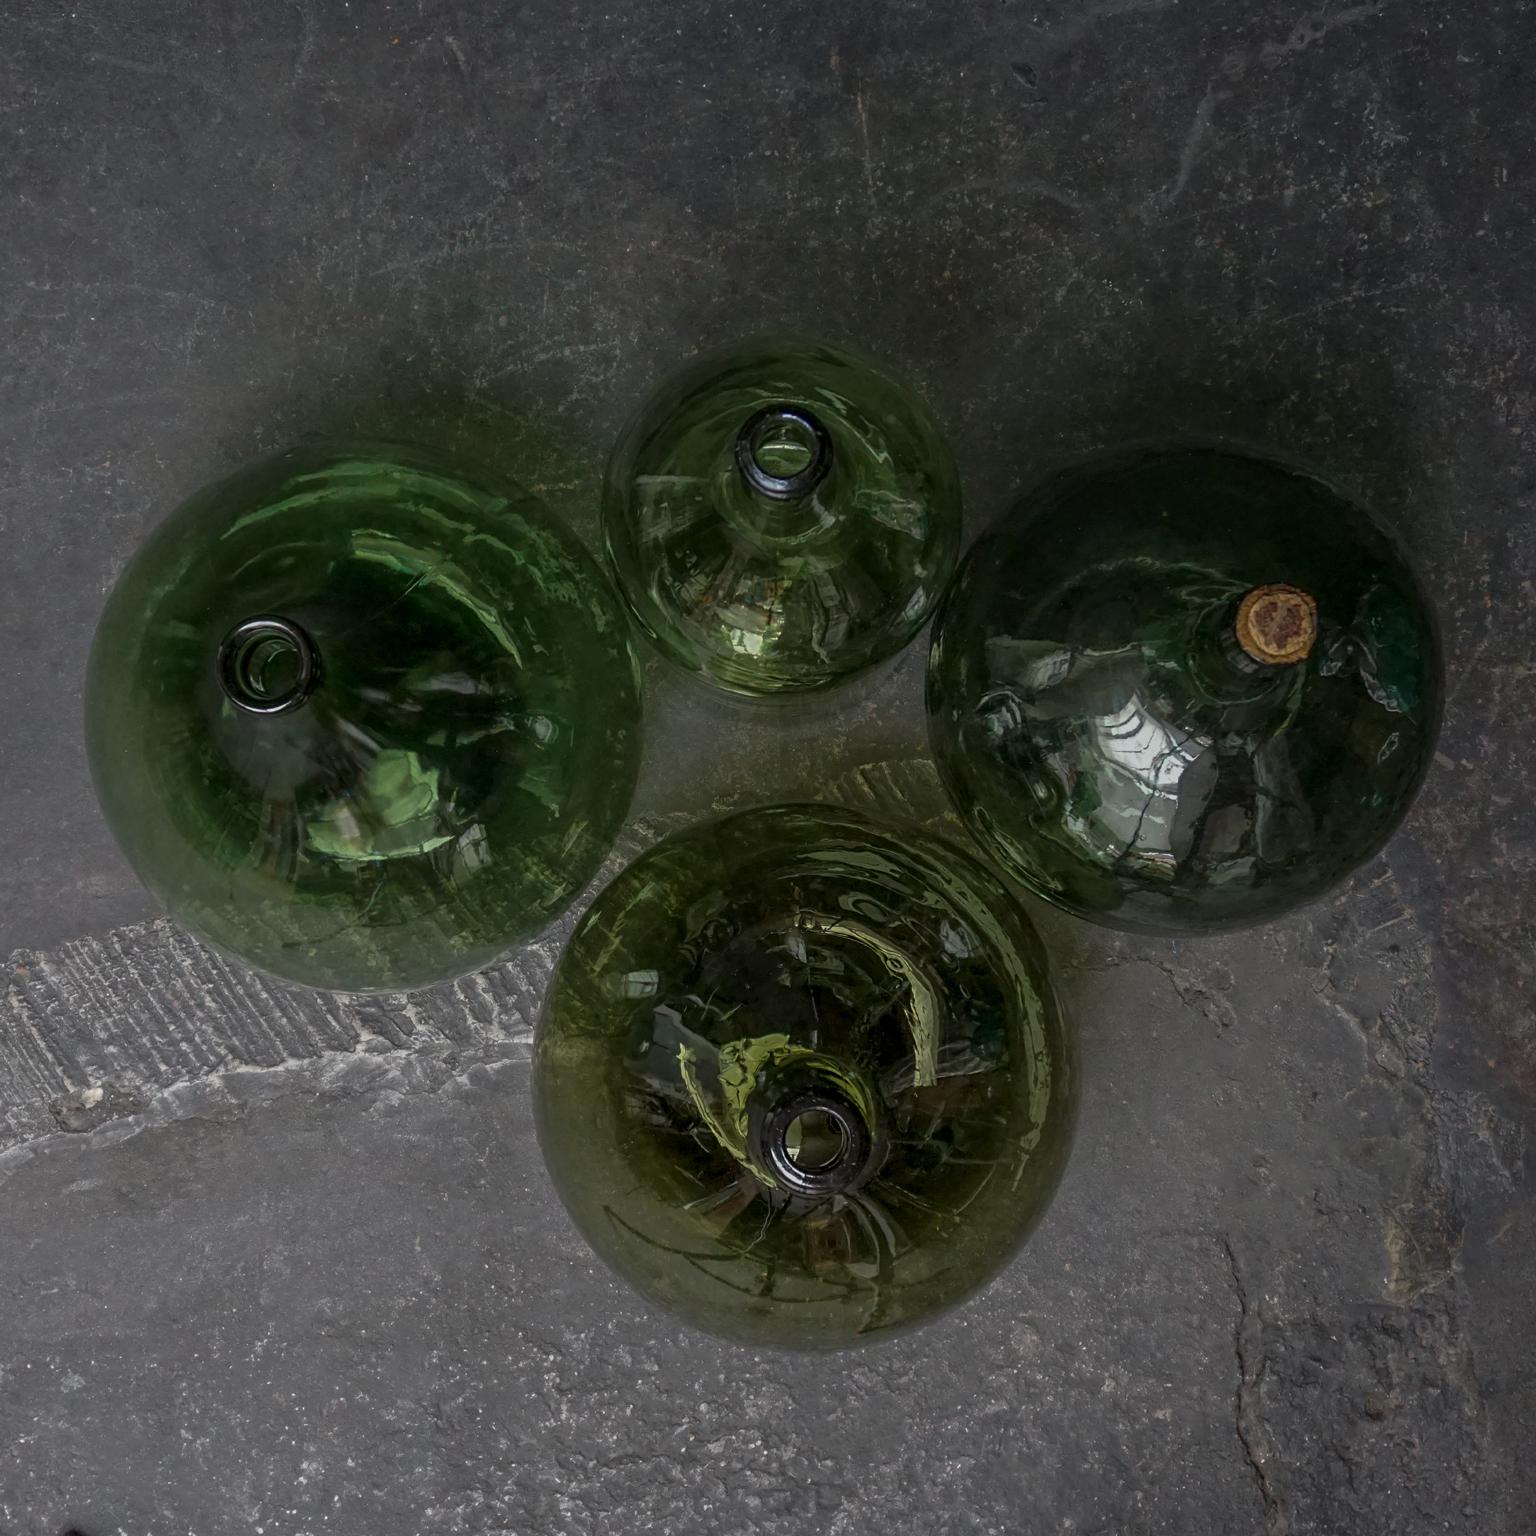 vintage glass bottles